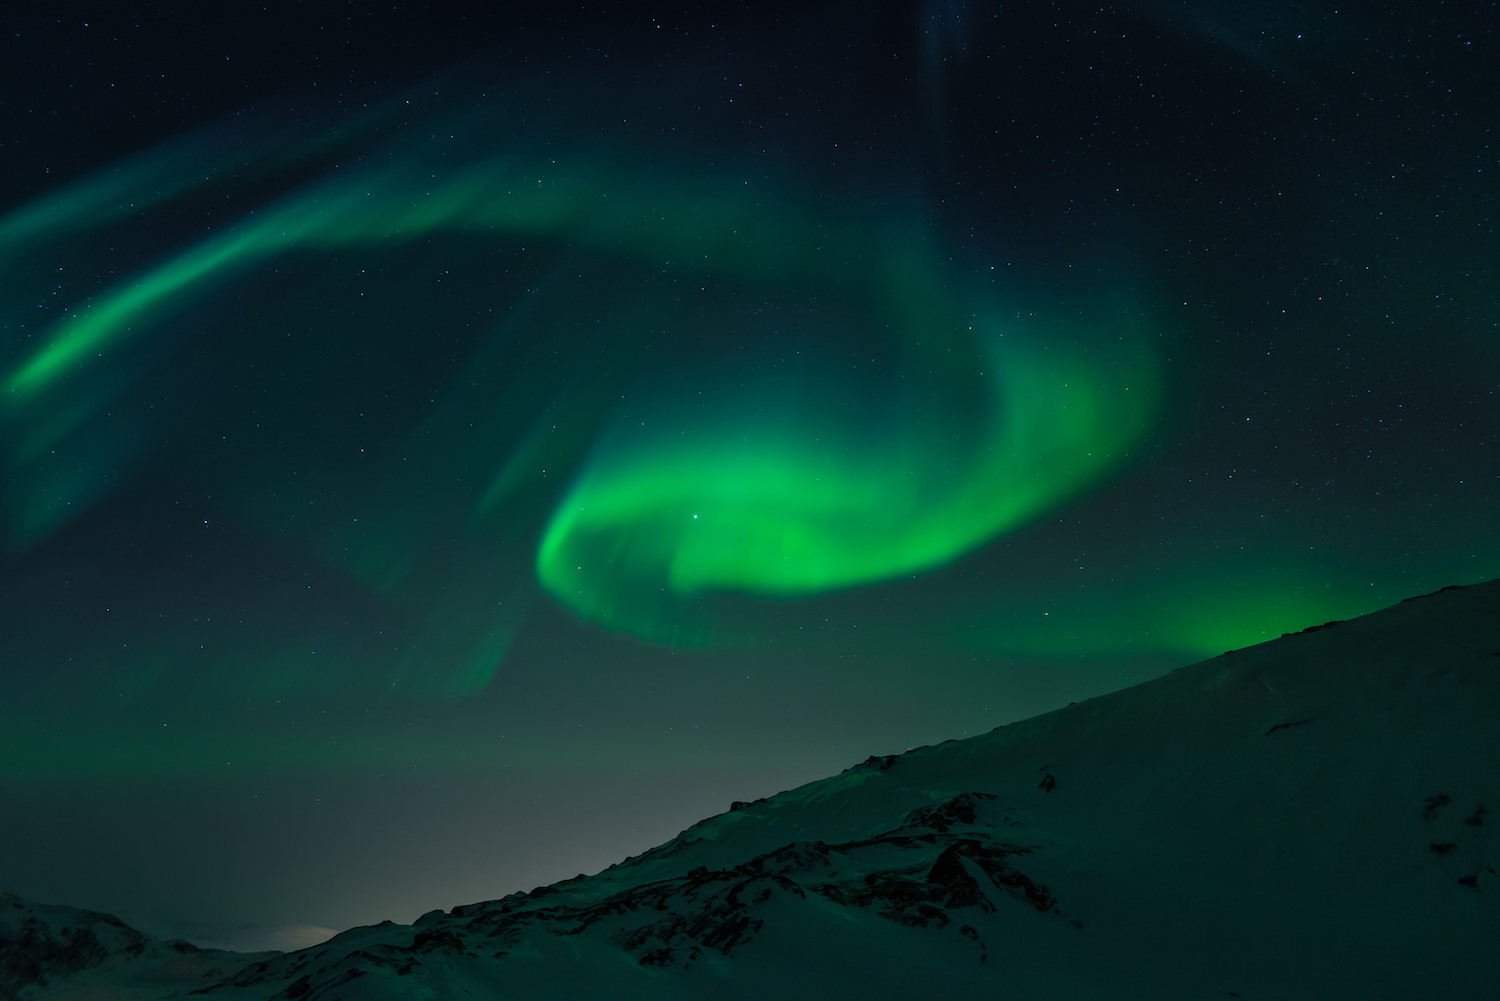 Les aurores boréales sont le résultat d’interactions entre des particules chargées issues du Soleil et le champ magnétique terrestre. © Marcelo Quinan, Flickr, CC by 2.0